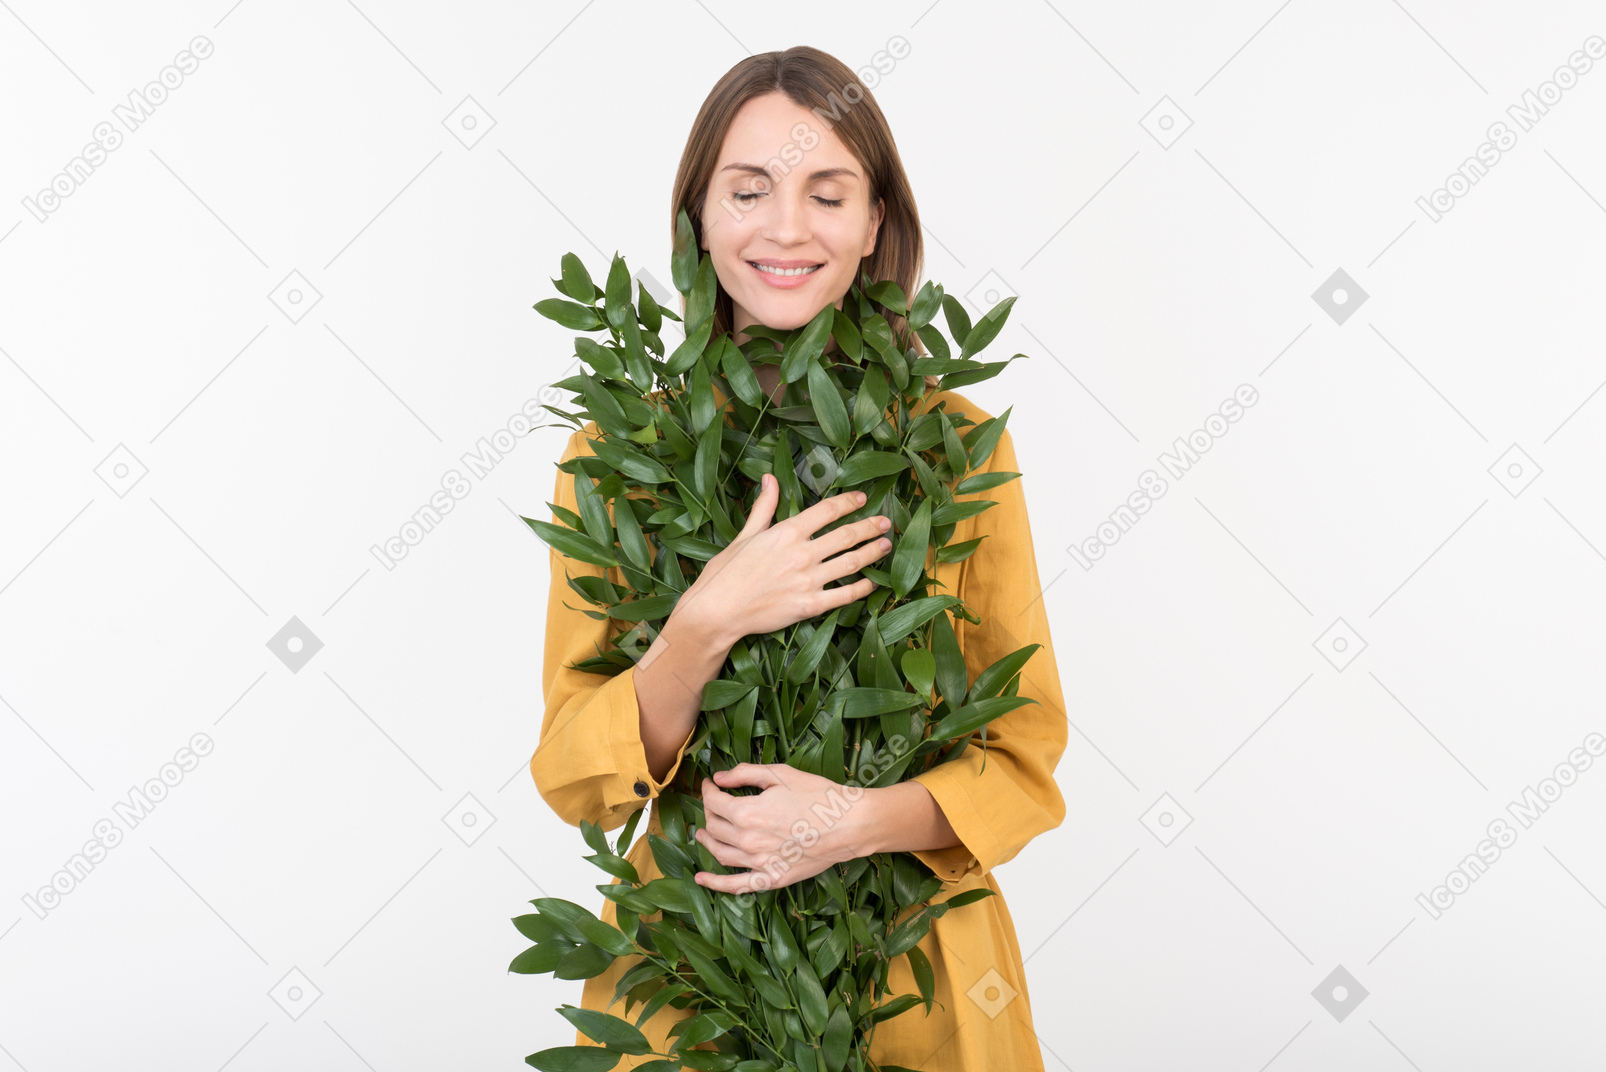 Jeune femme étreignant des branches vertes